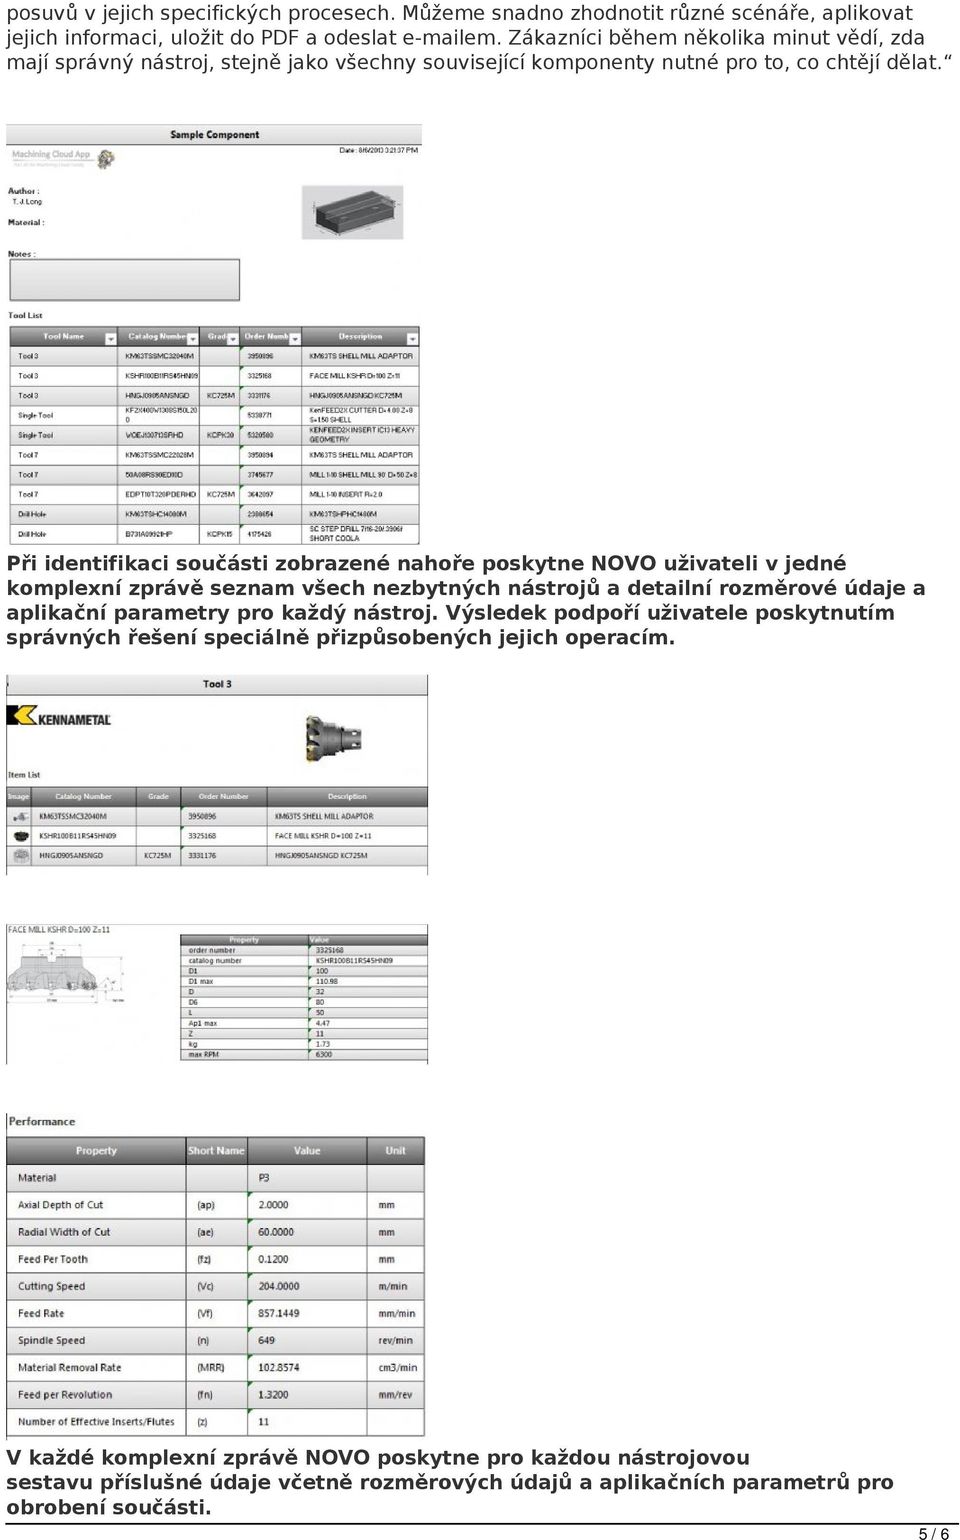 Při identifikaci součásti zobrazené nahoře poskytne NOVO uživateli v jedné komplexní zprávě seznam všech nezbytných nástrojů a detailní rozměrové údaje a aplikační parametry pro